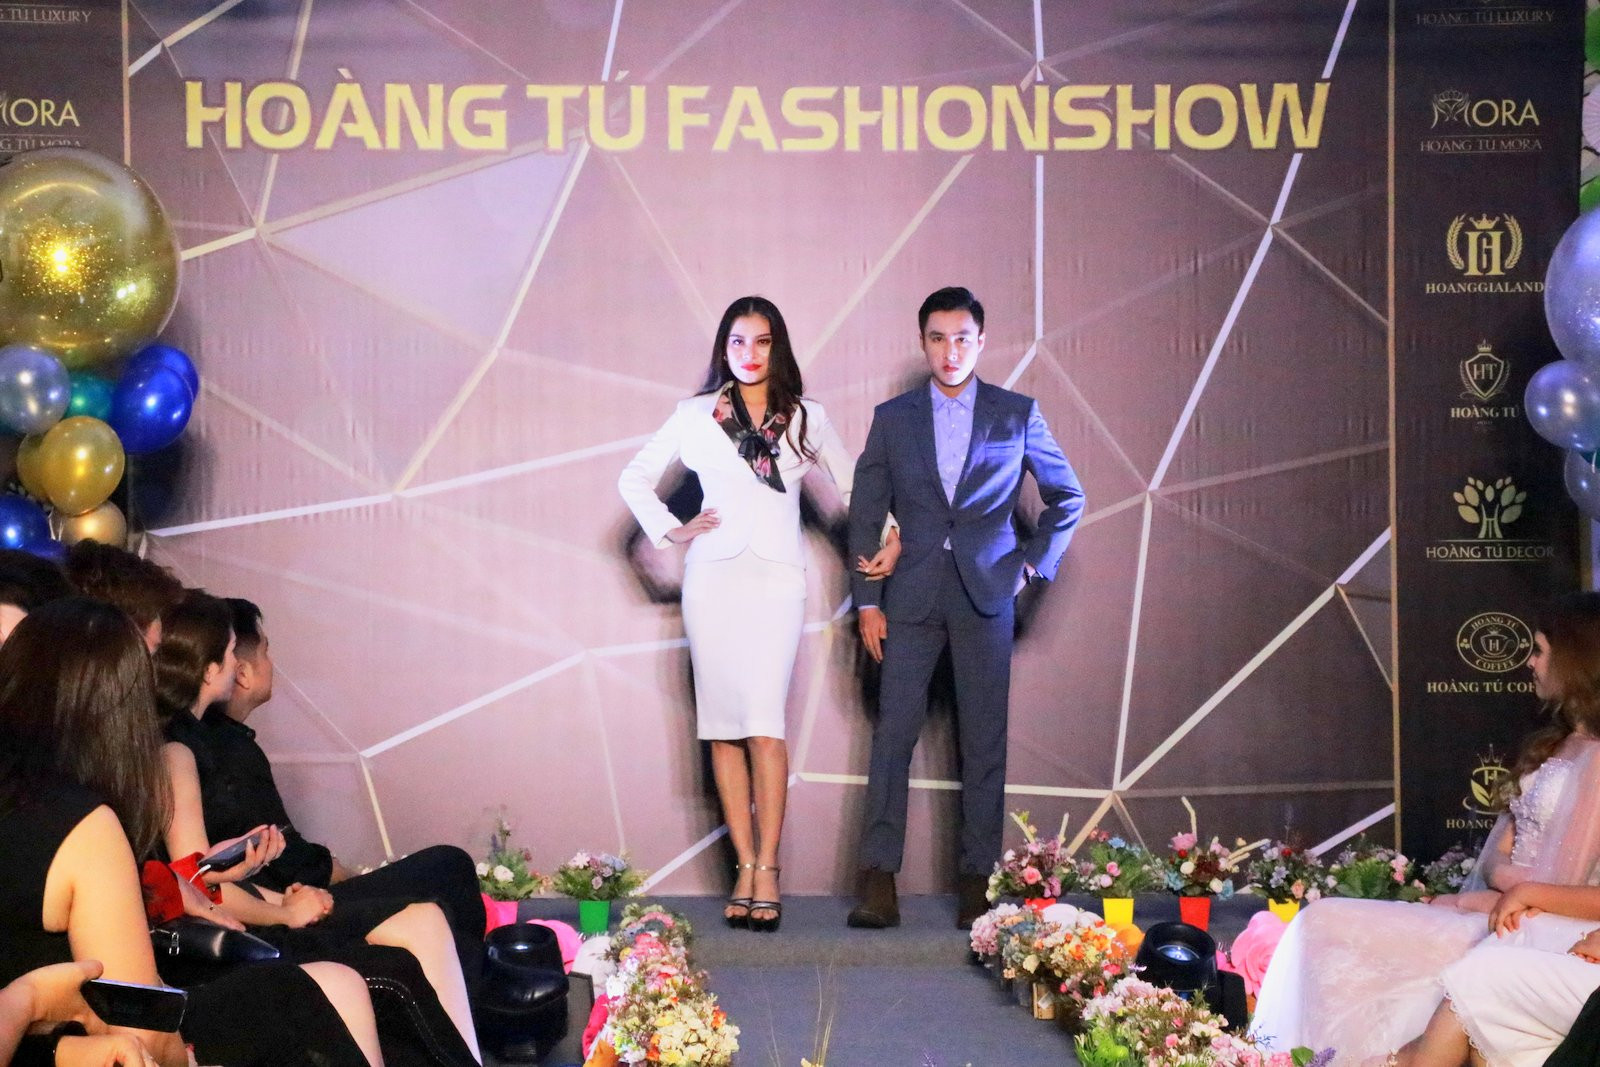 Models displaying clothes of Hoang Tu Luxury and Hoang Tu Mora